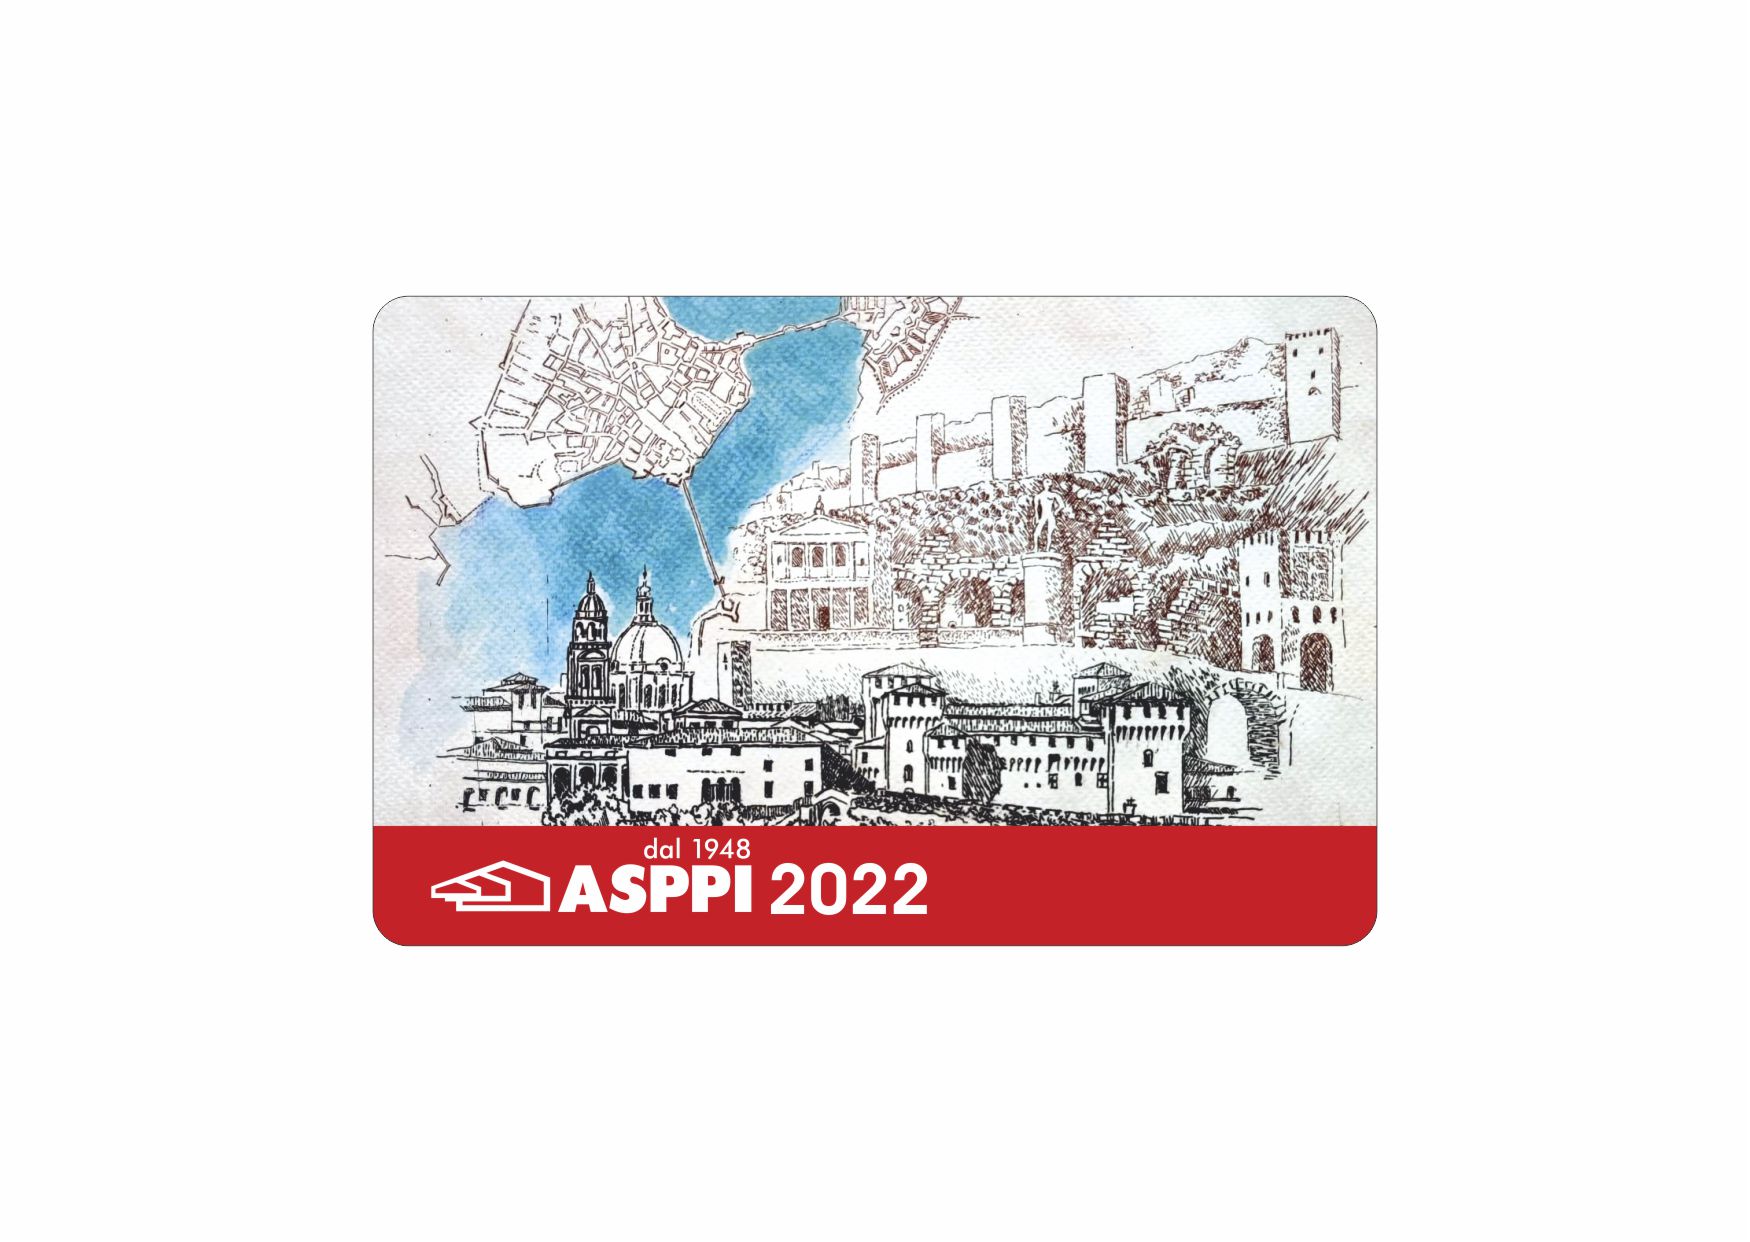 La tessera ASPPI 2022 – Marcello Trabucco “un quadro per l’ASPPI”